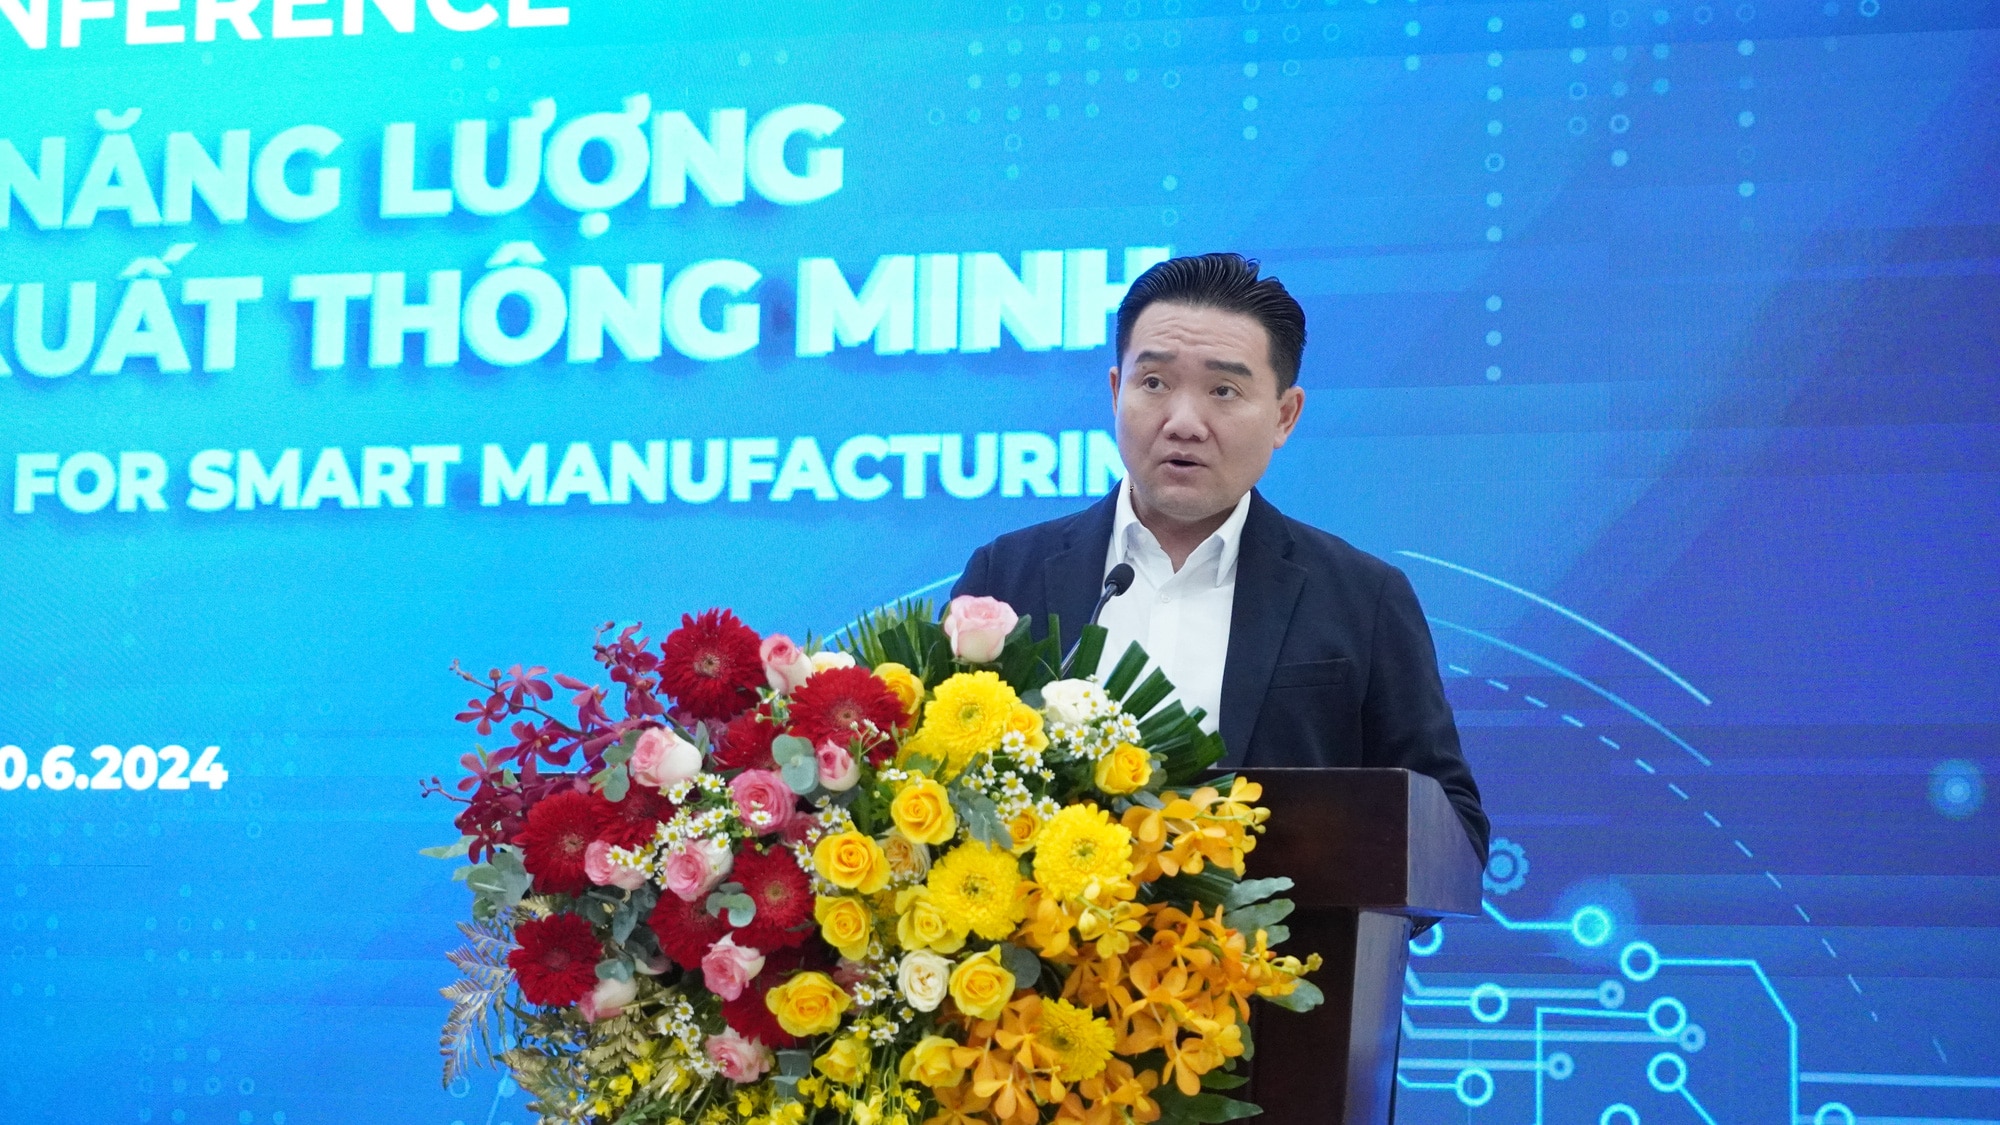 Ông Nguyễn Trường Thi - phó giám đốc Sở Công Thương tỉnh Bình Dương - cho hay các khu công nghiệp của Bình Dương đang ngày càng thông minh và xanh hơn - Ảnh: BTC